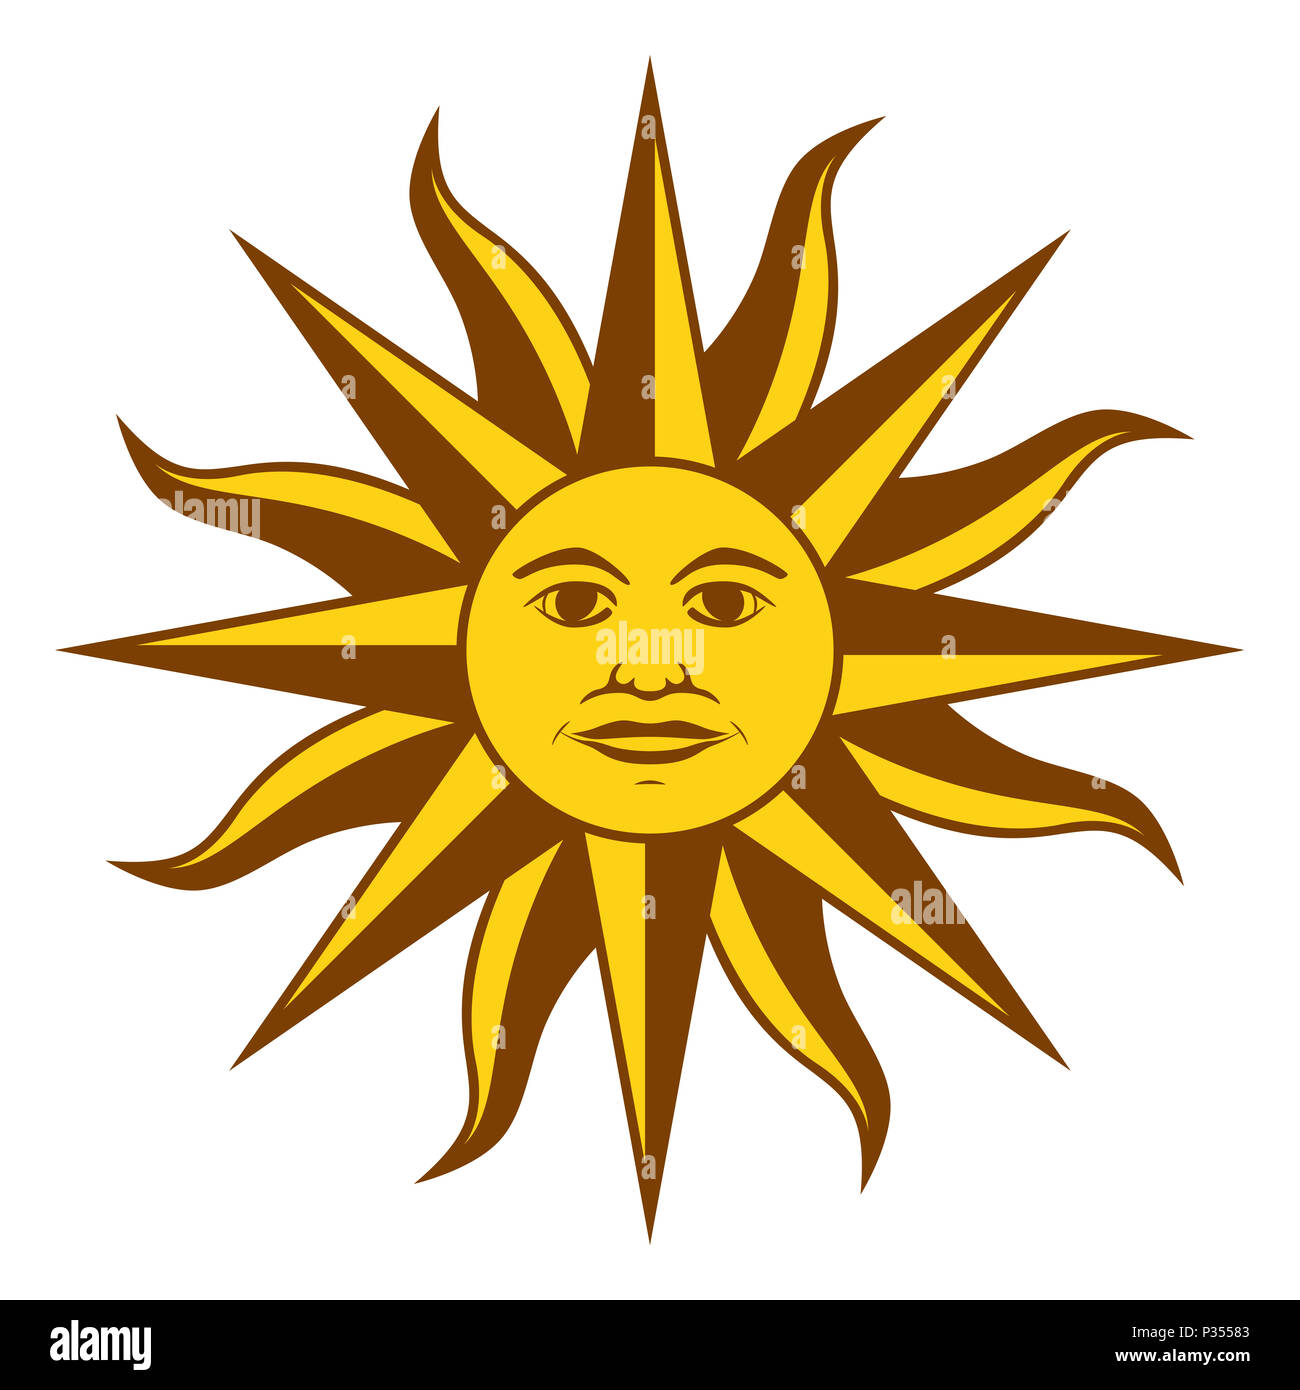 Sole di maggio, spagnolo Sol de Mayo, un emblema nazionale dell Uruguay sulla bandiera del paese. Radiant color giallo oro sole con faccia e raggi. Illustrazione. Foto Stock